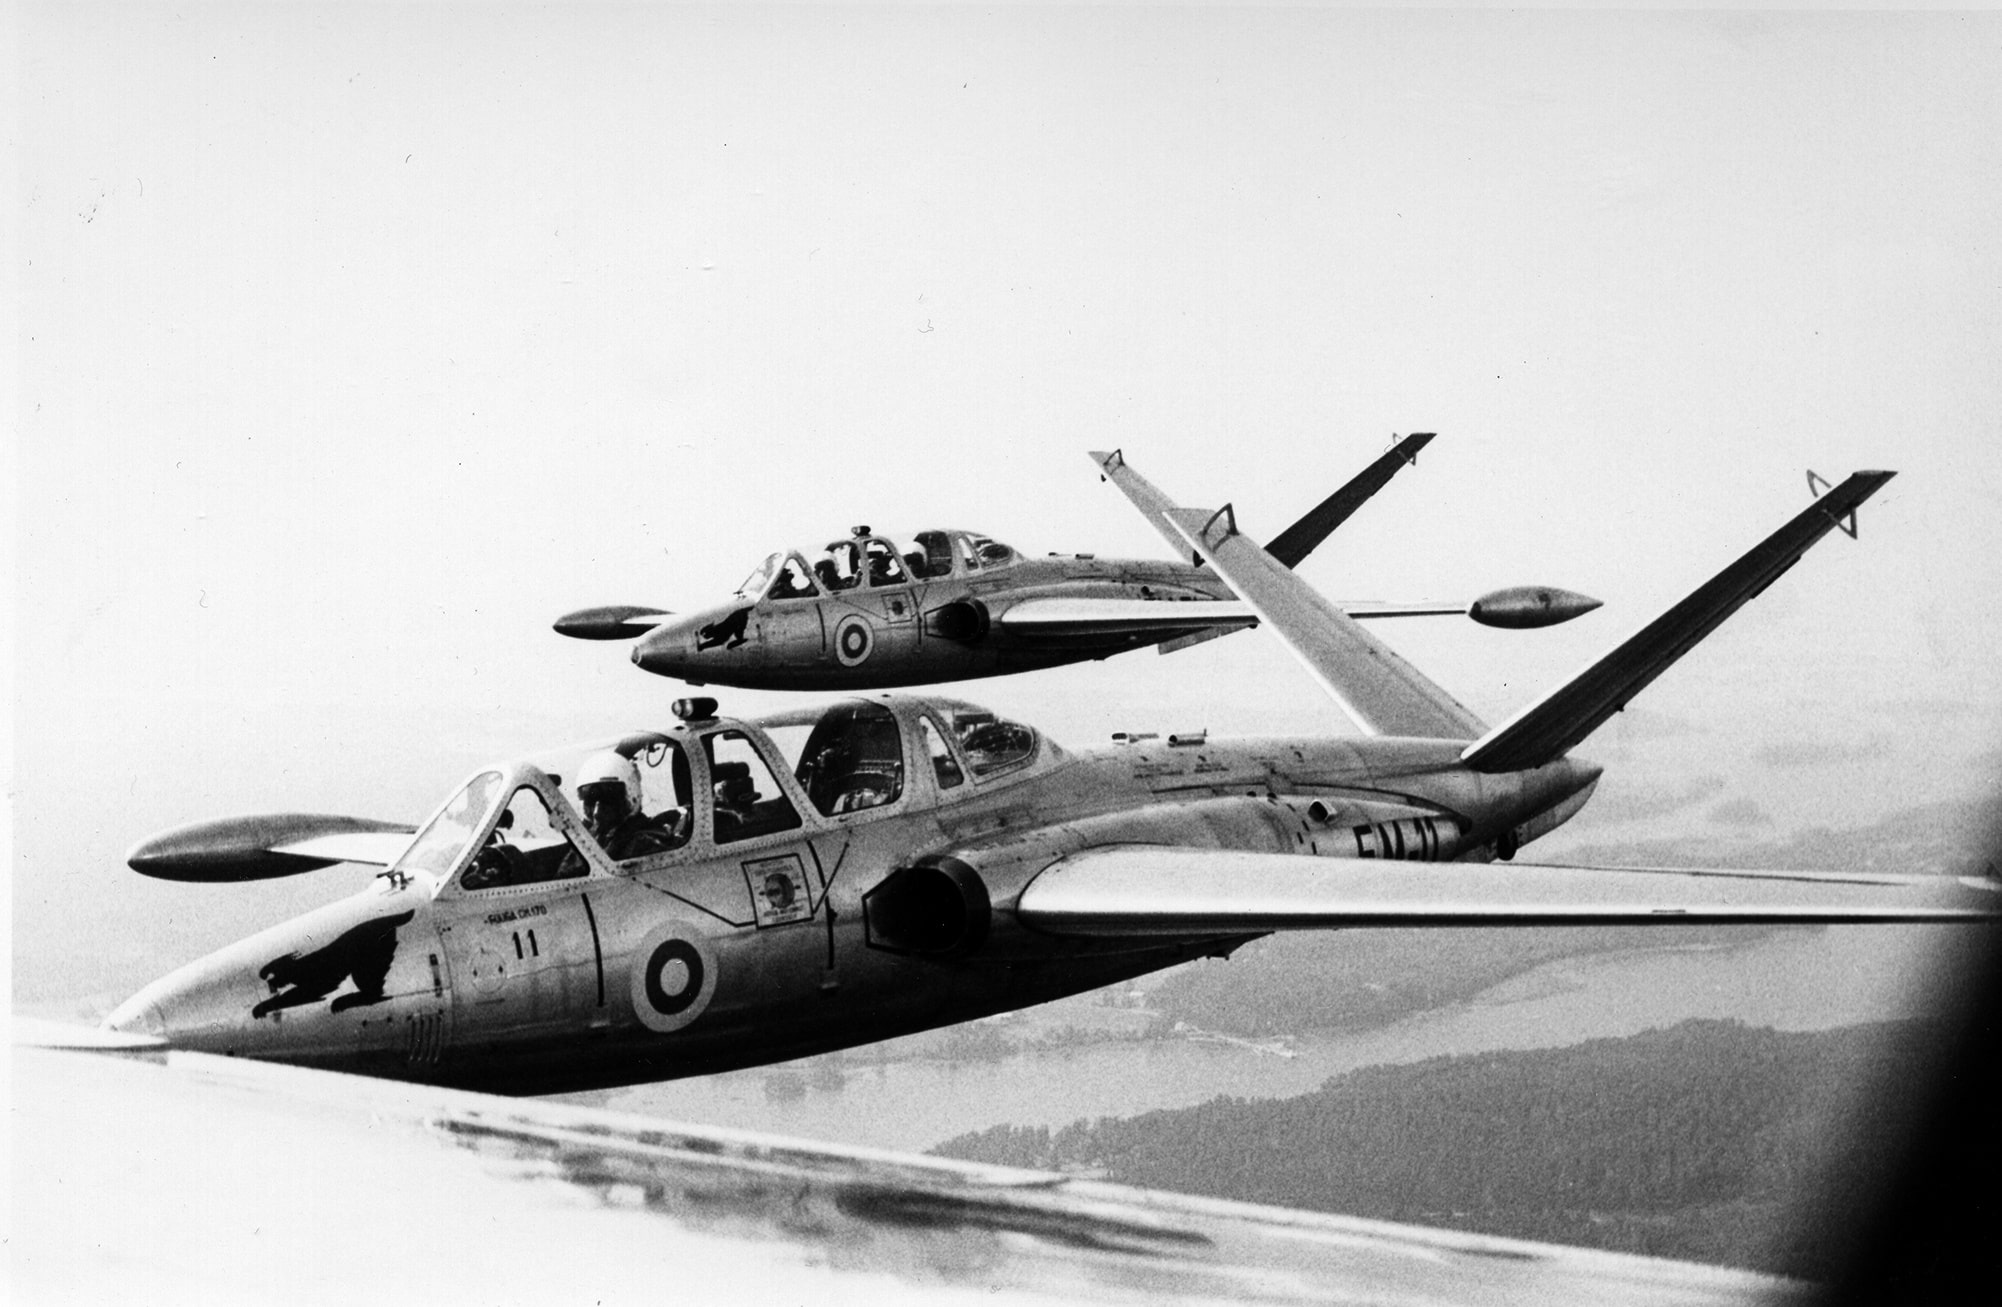 Kuvassa kaksi Fouga Magister -suihkuharjoituskonetta lentää rinnakkain.